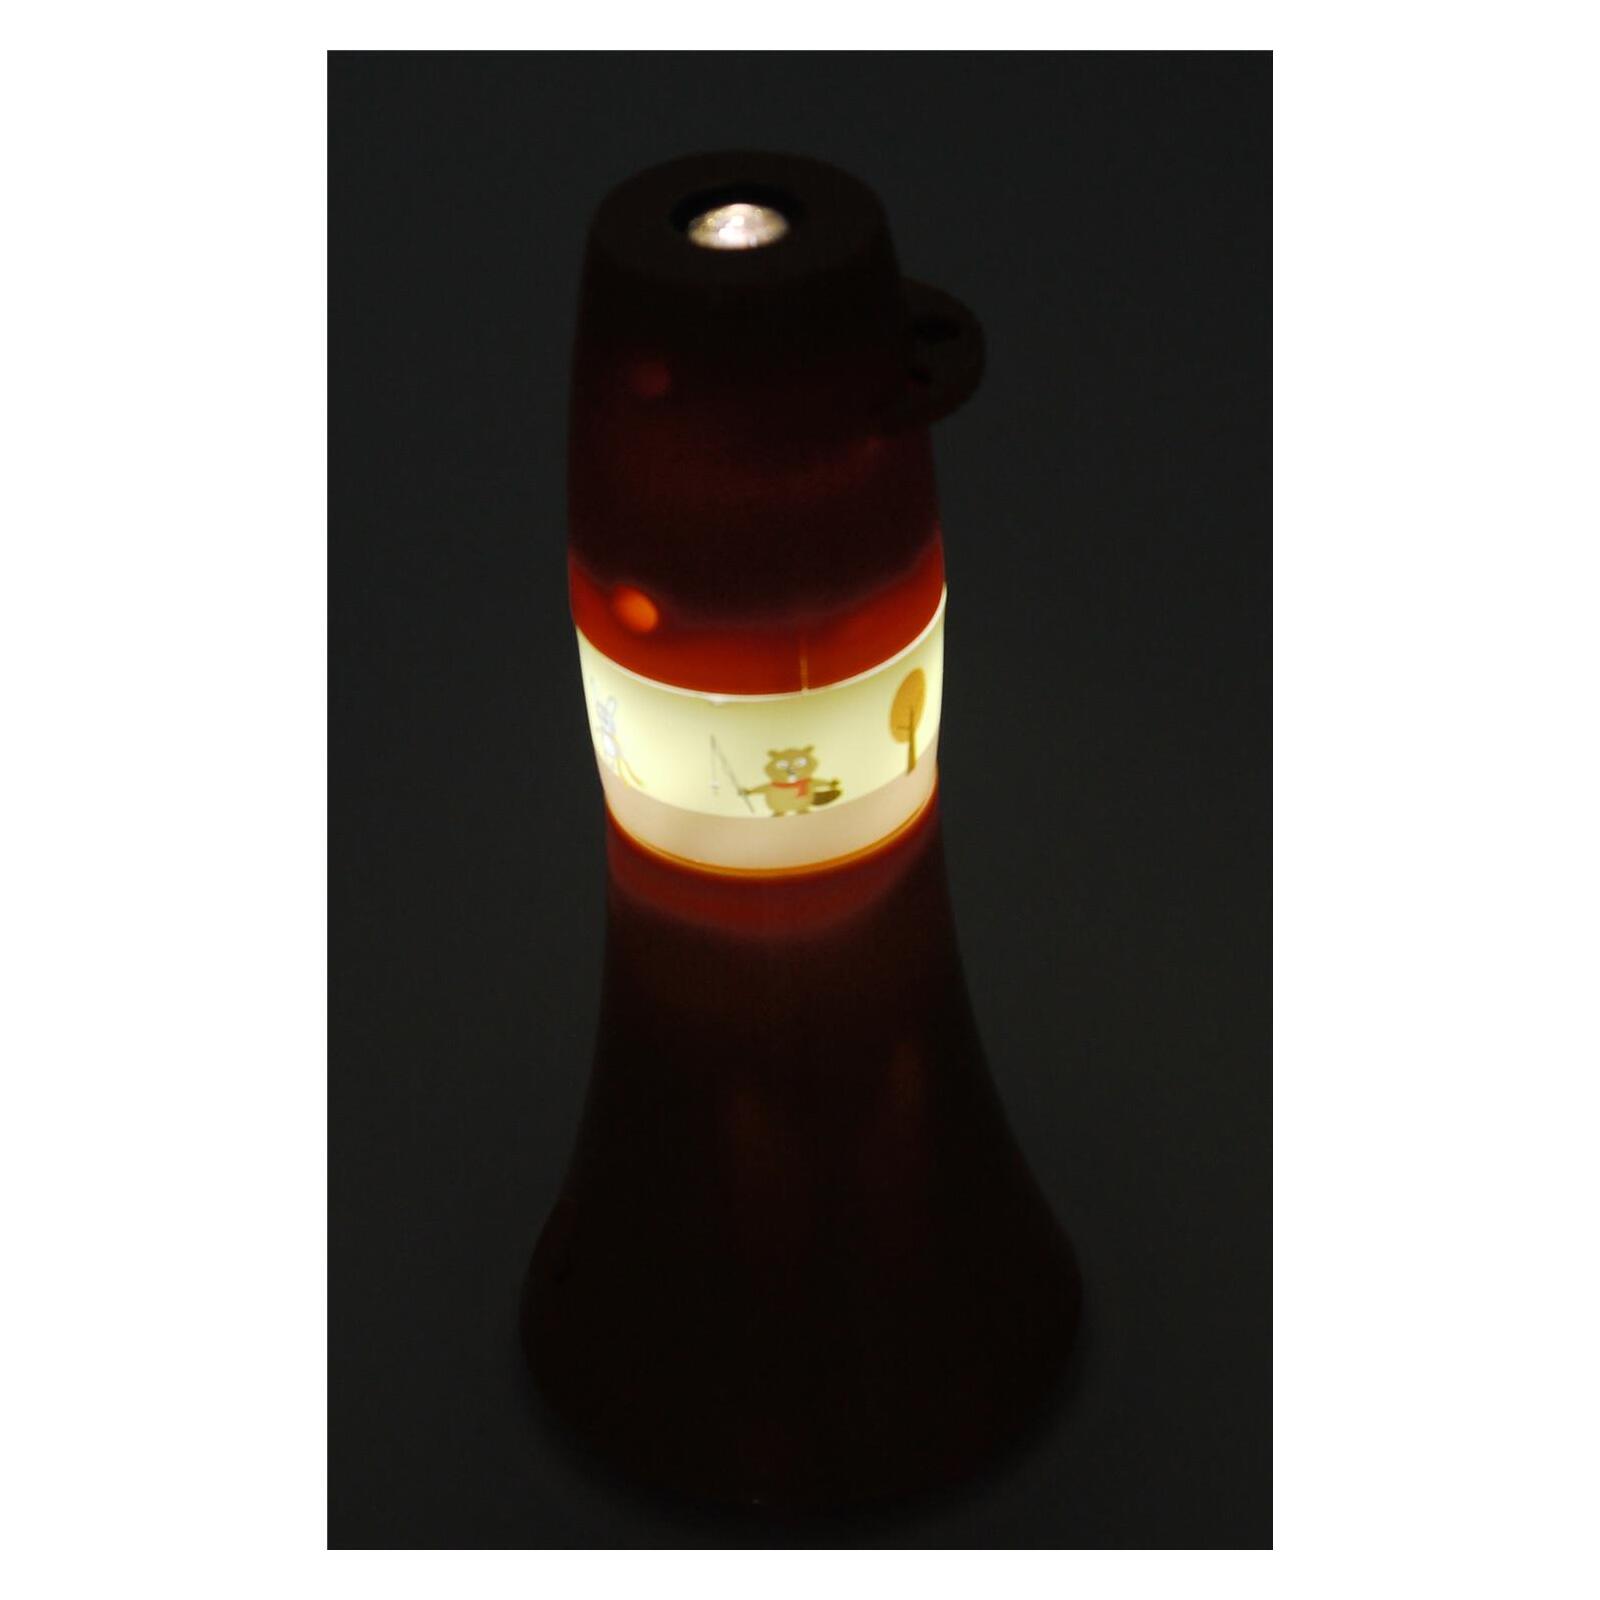 Taschen-Projektor Waldtiere, 6 fach - Lampen & Leuchten Onlineshop